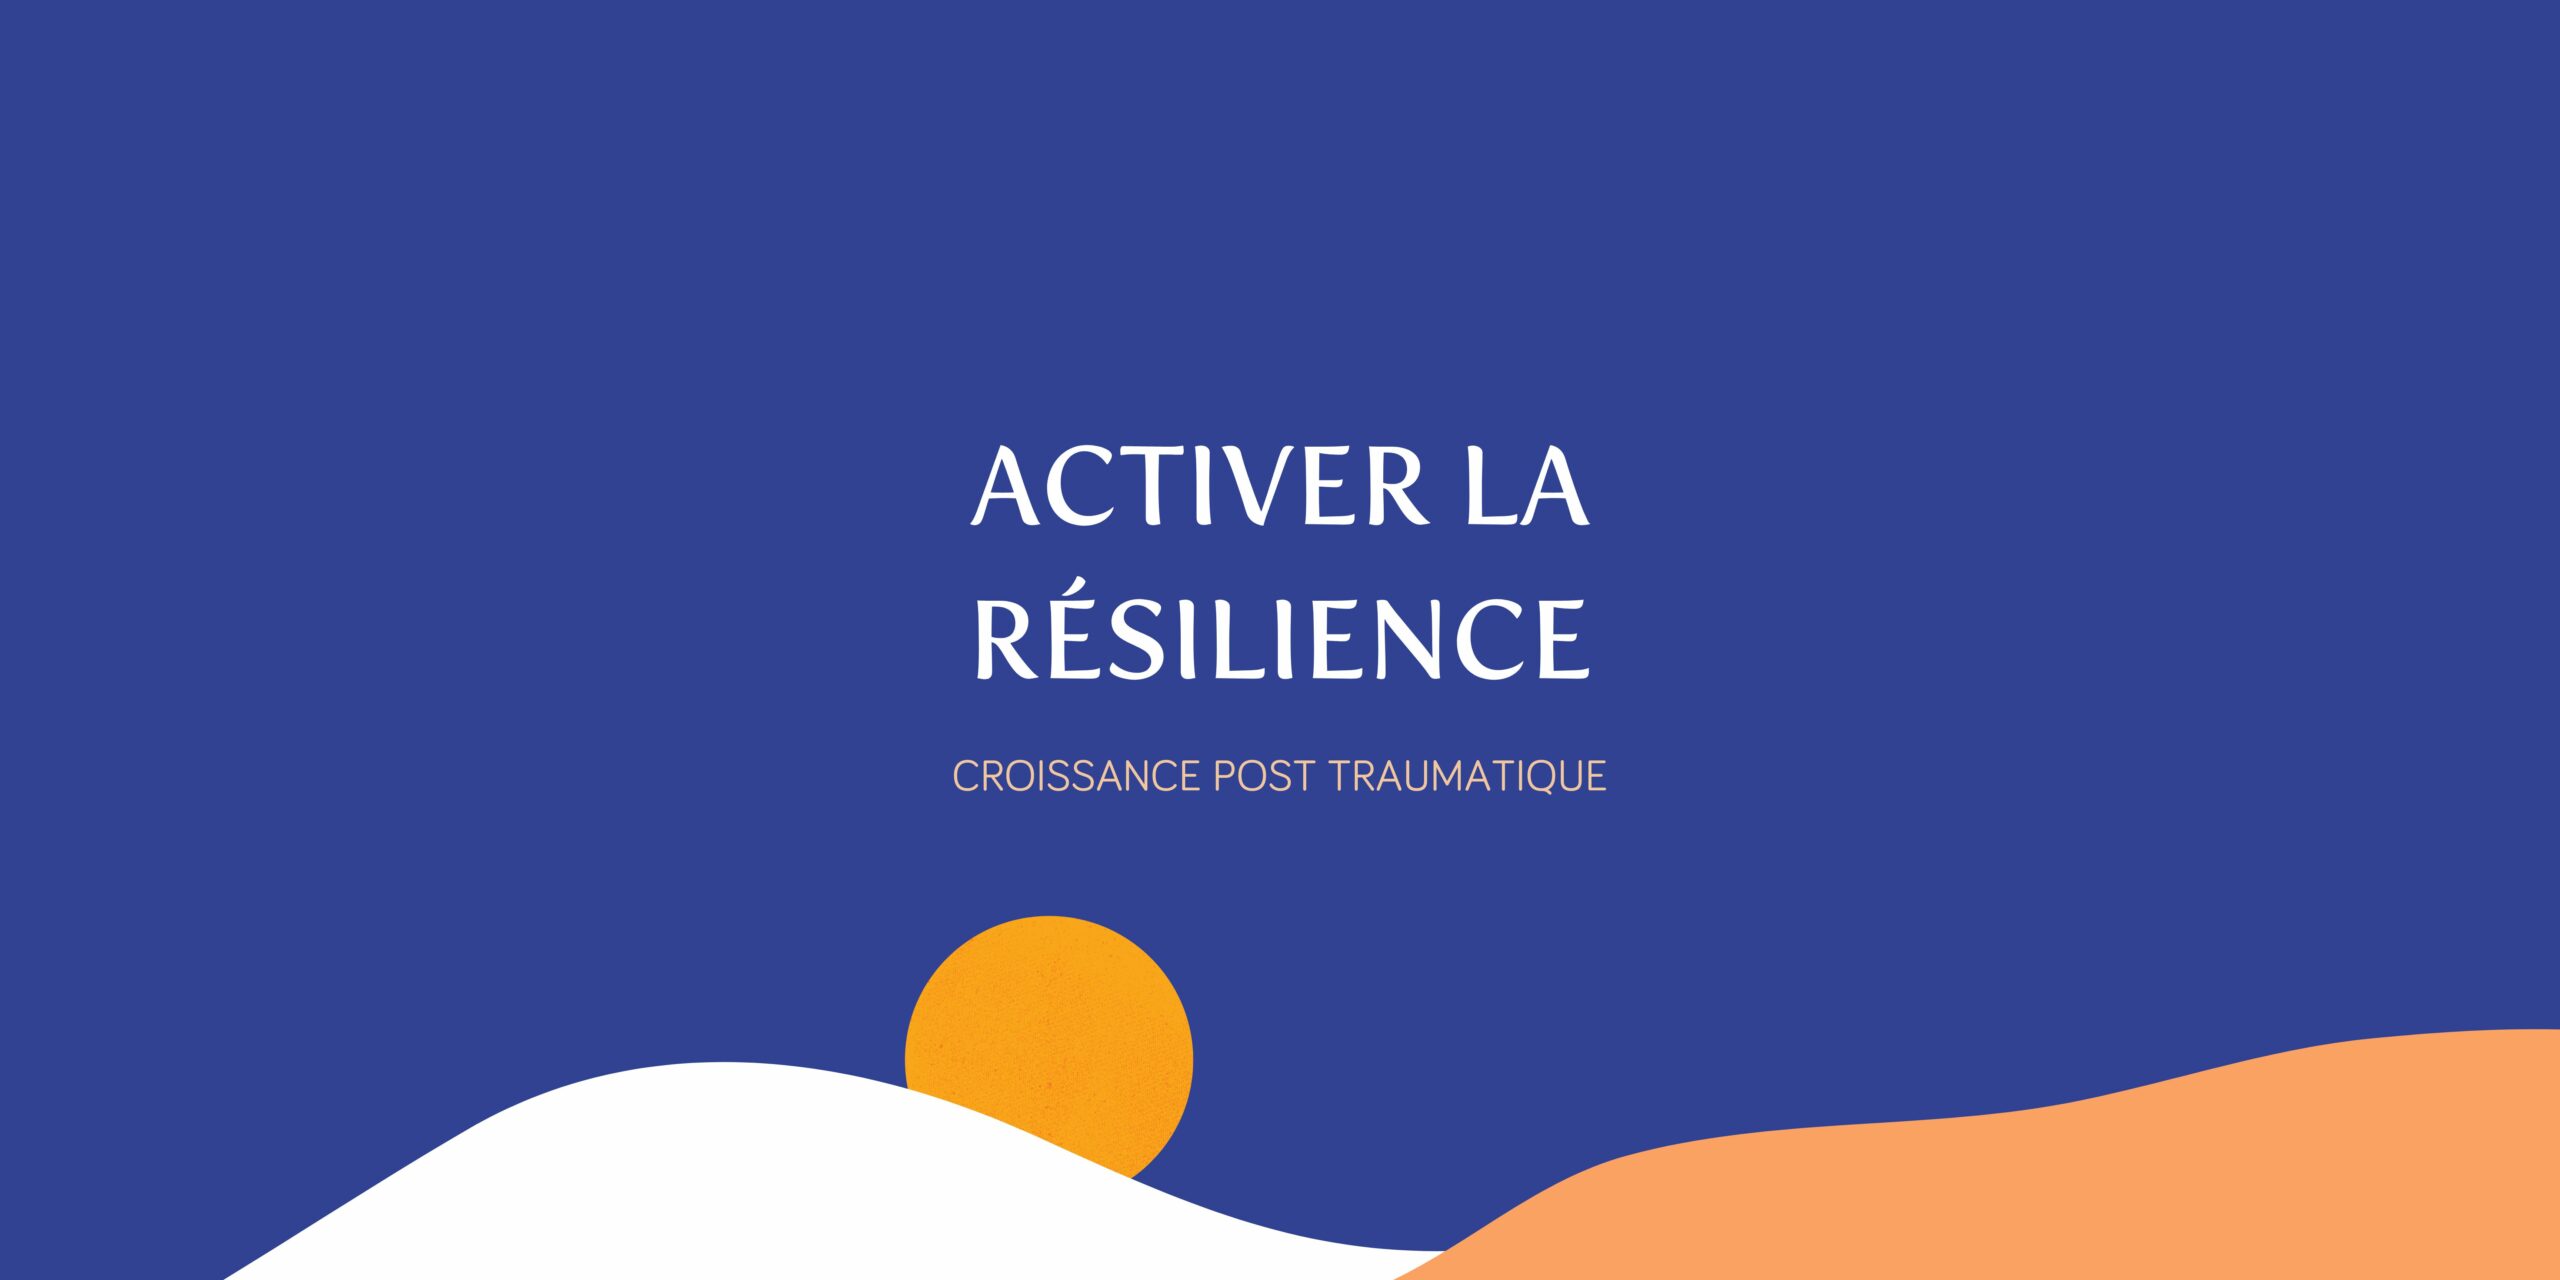 Bannière "Activer la résilience", du stress post traumatique à la croissance post traumatique